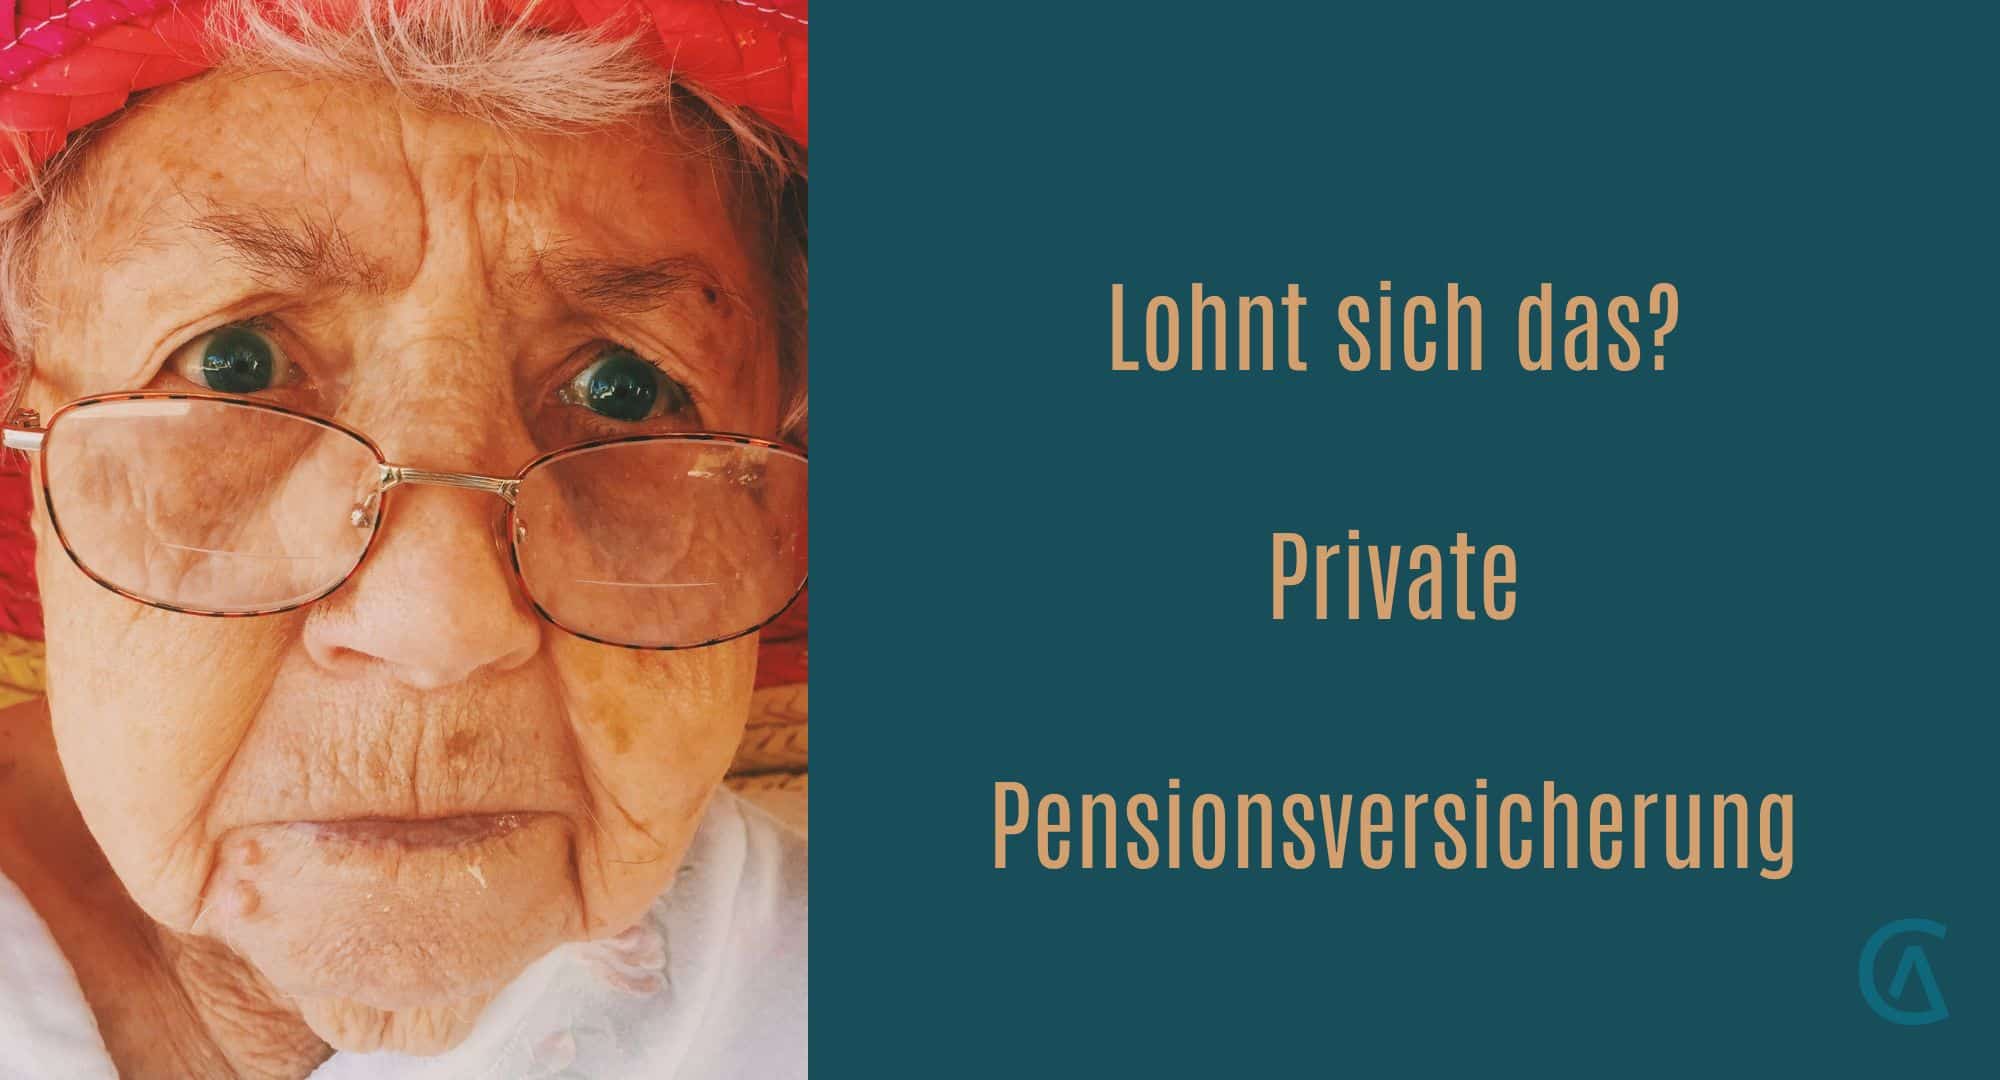 Alte Dame mit Brille und skeptischen Blick fragt sich: "Lohnt sich das? Private Pensionsvorsorge?"